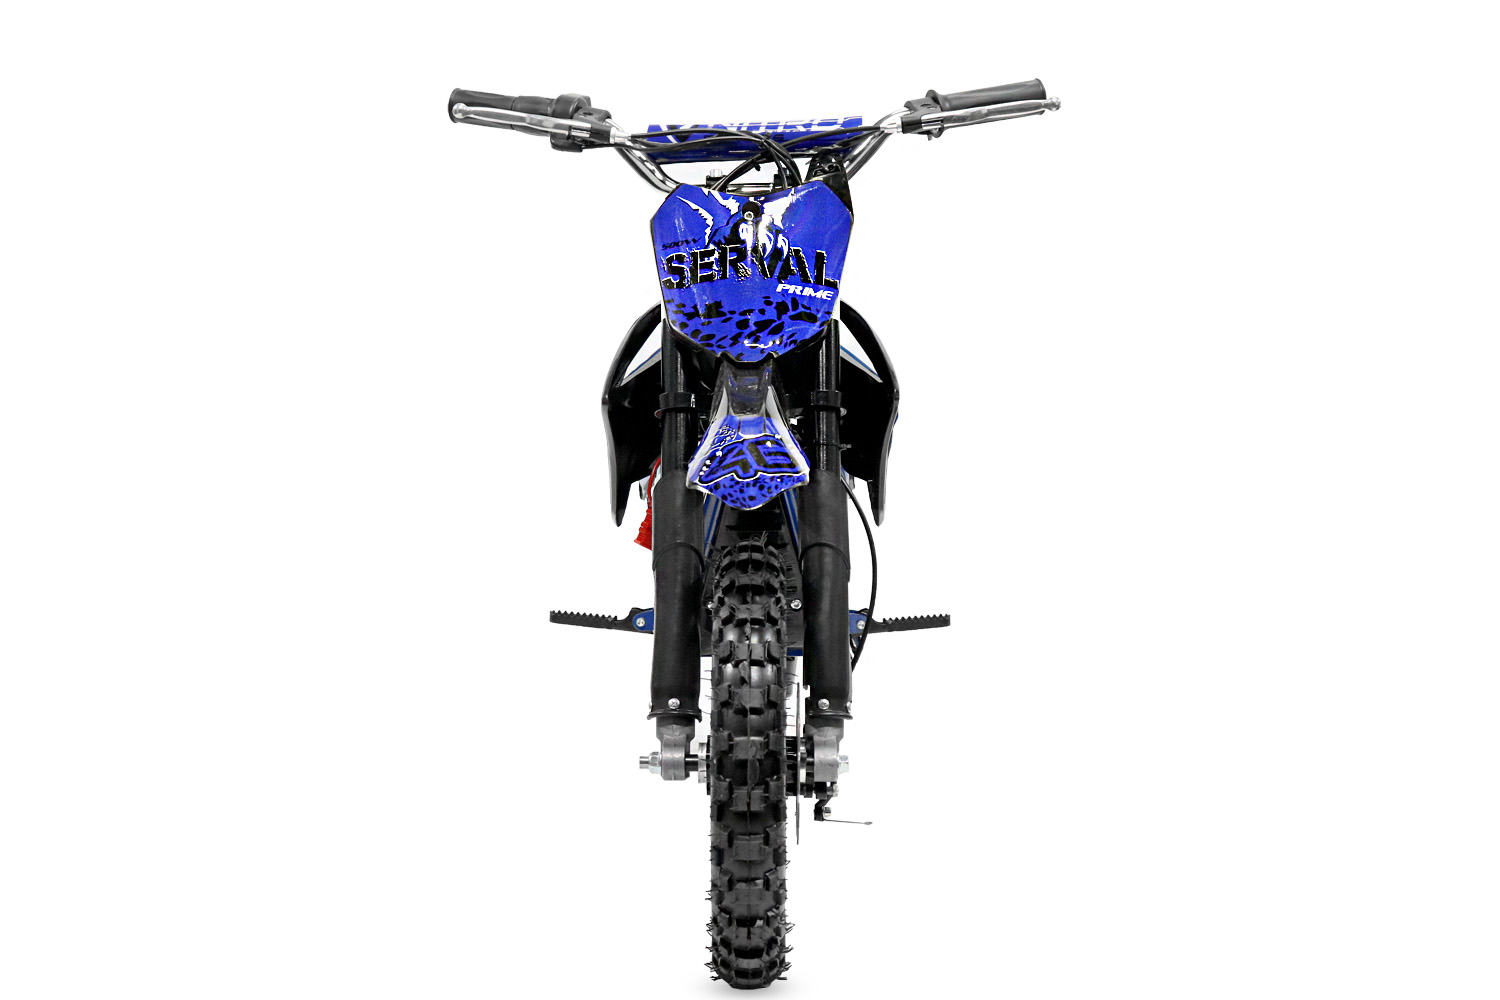 Pocket bike 500W MX moto électrique enfant - Quads Motos Familly Pièces  quads 34